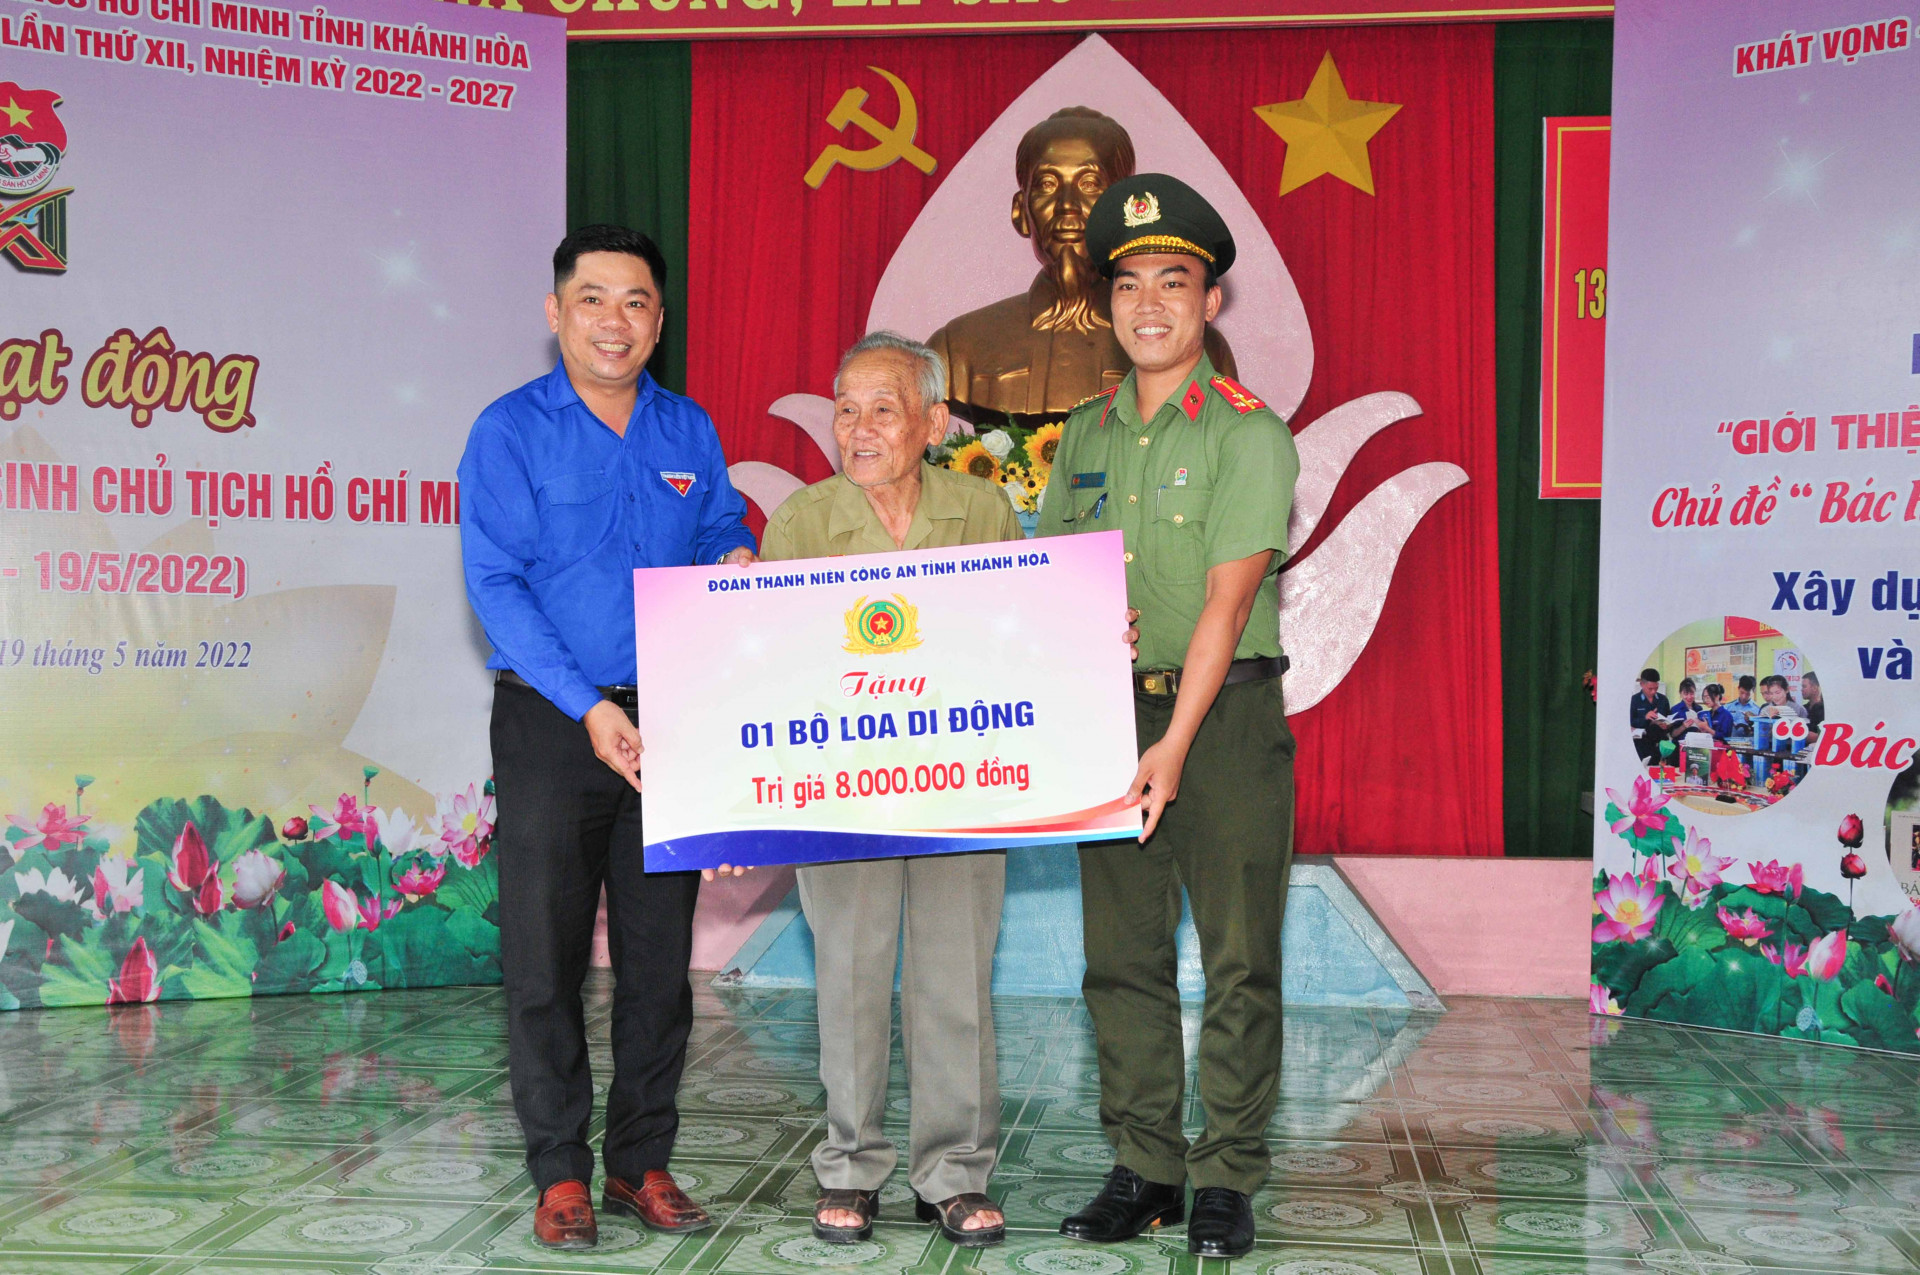 Tỉnh đoàn, Đoàn Thanh niên Công an tỉnh trao biểu trưng phần quà cho Khu tưởng niệm Chủ tịch Hồ Chí Minh nhằm hỗ trợ công tác tuyên truyền, sinh hoạt cộng đồng tại đây